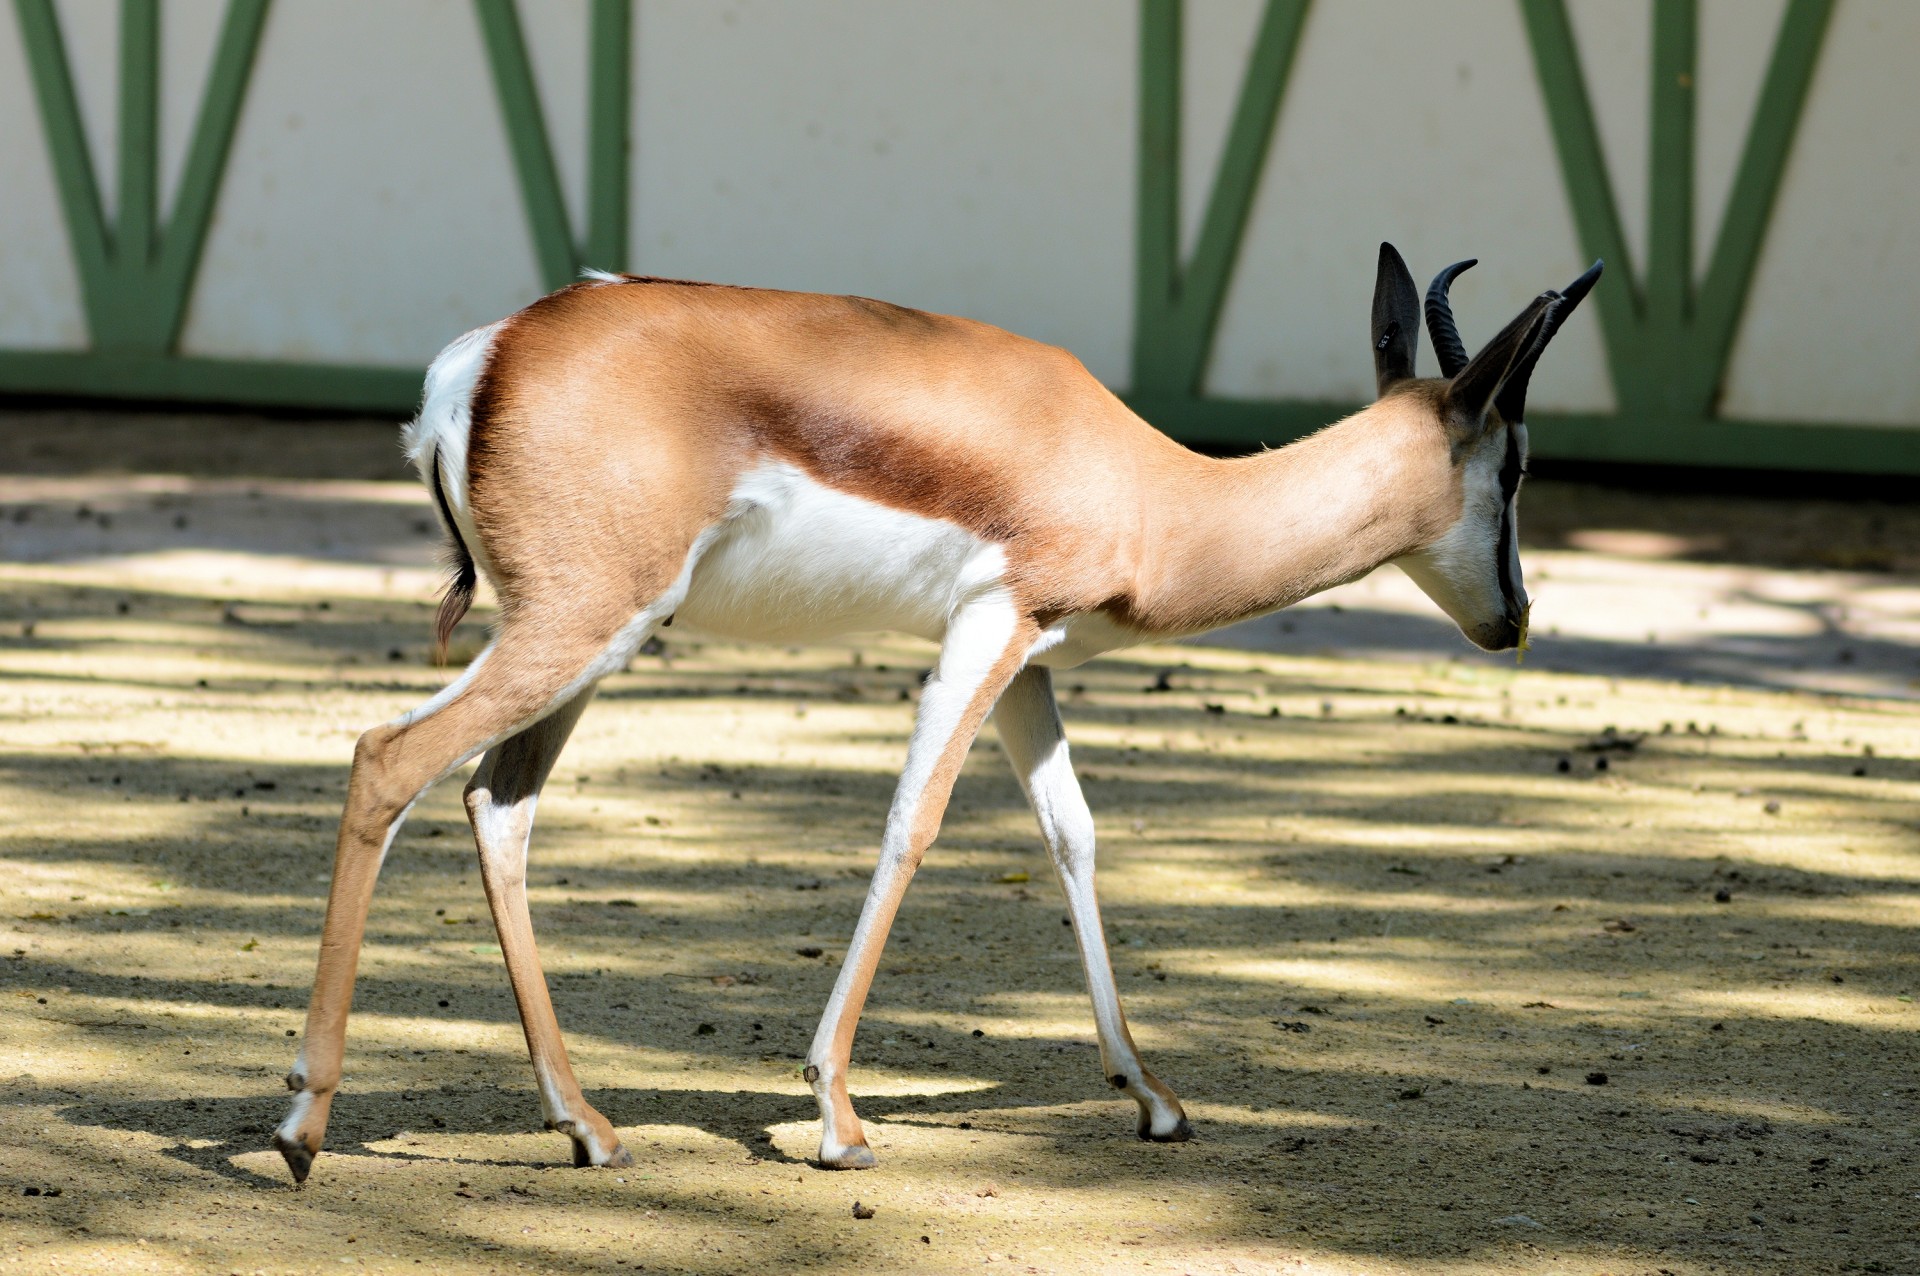 sable antelope wildlife free photo